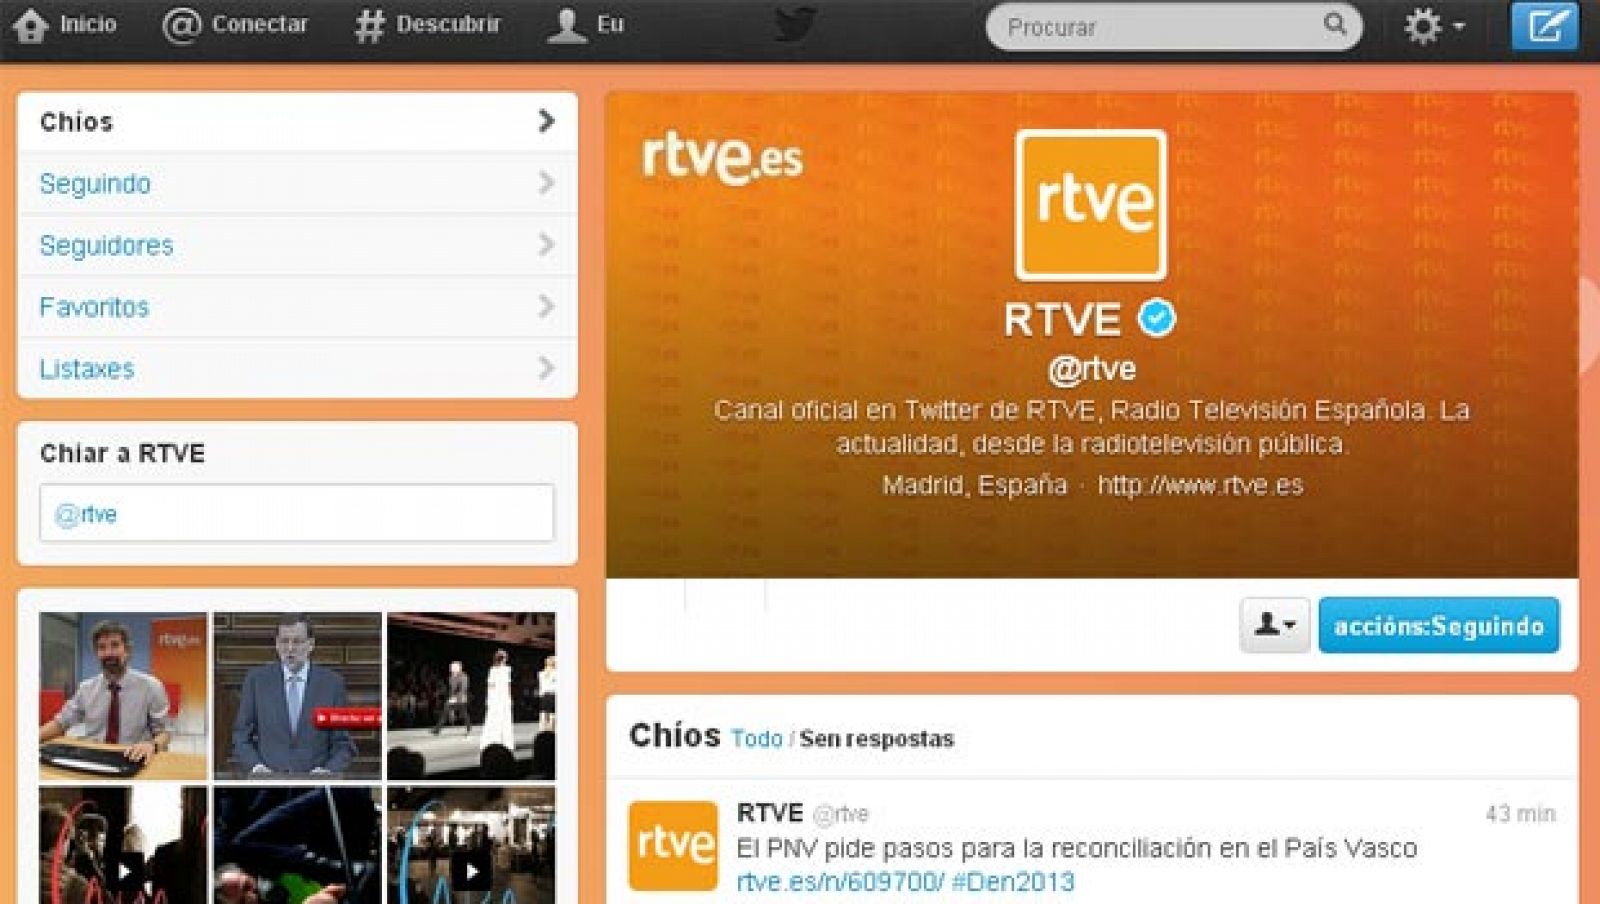 La cuenta de RTVE en Twitter en gallego